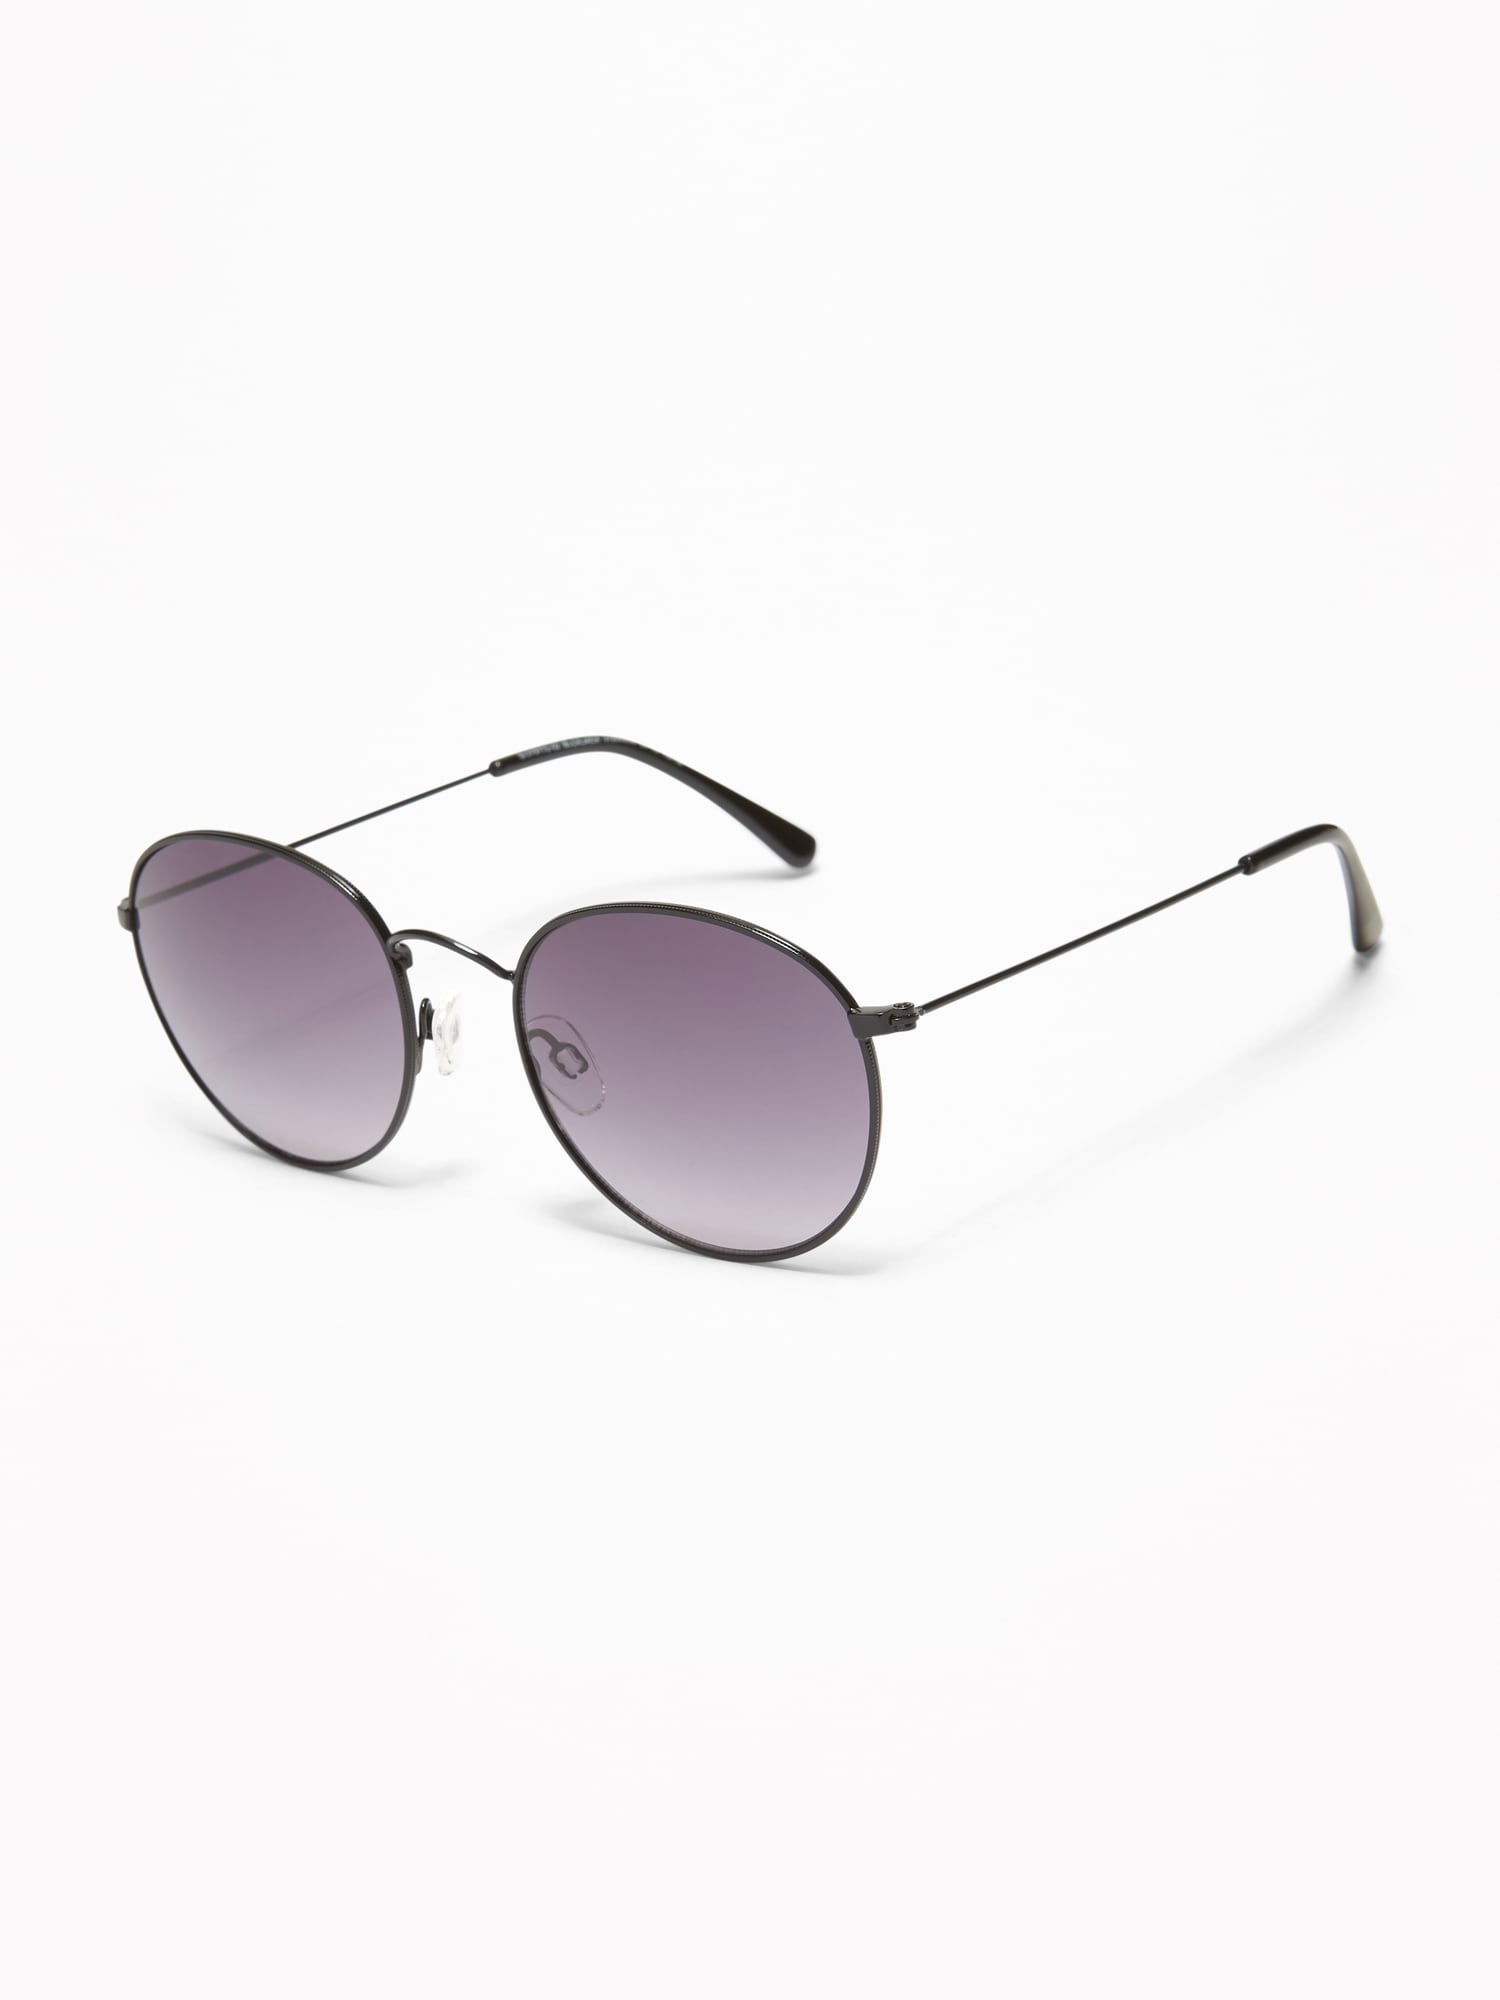 Old Navy Sunglasses for Women for sale | eBay